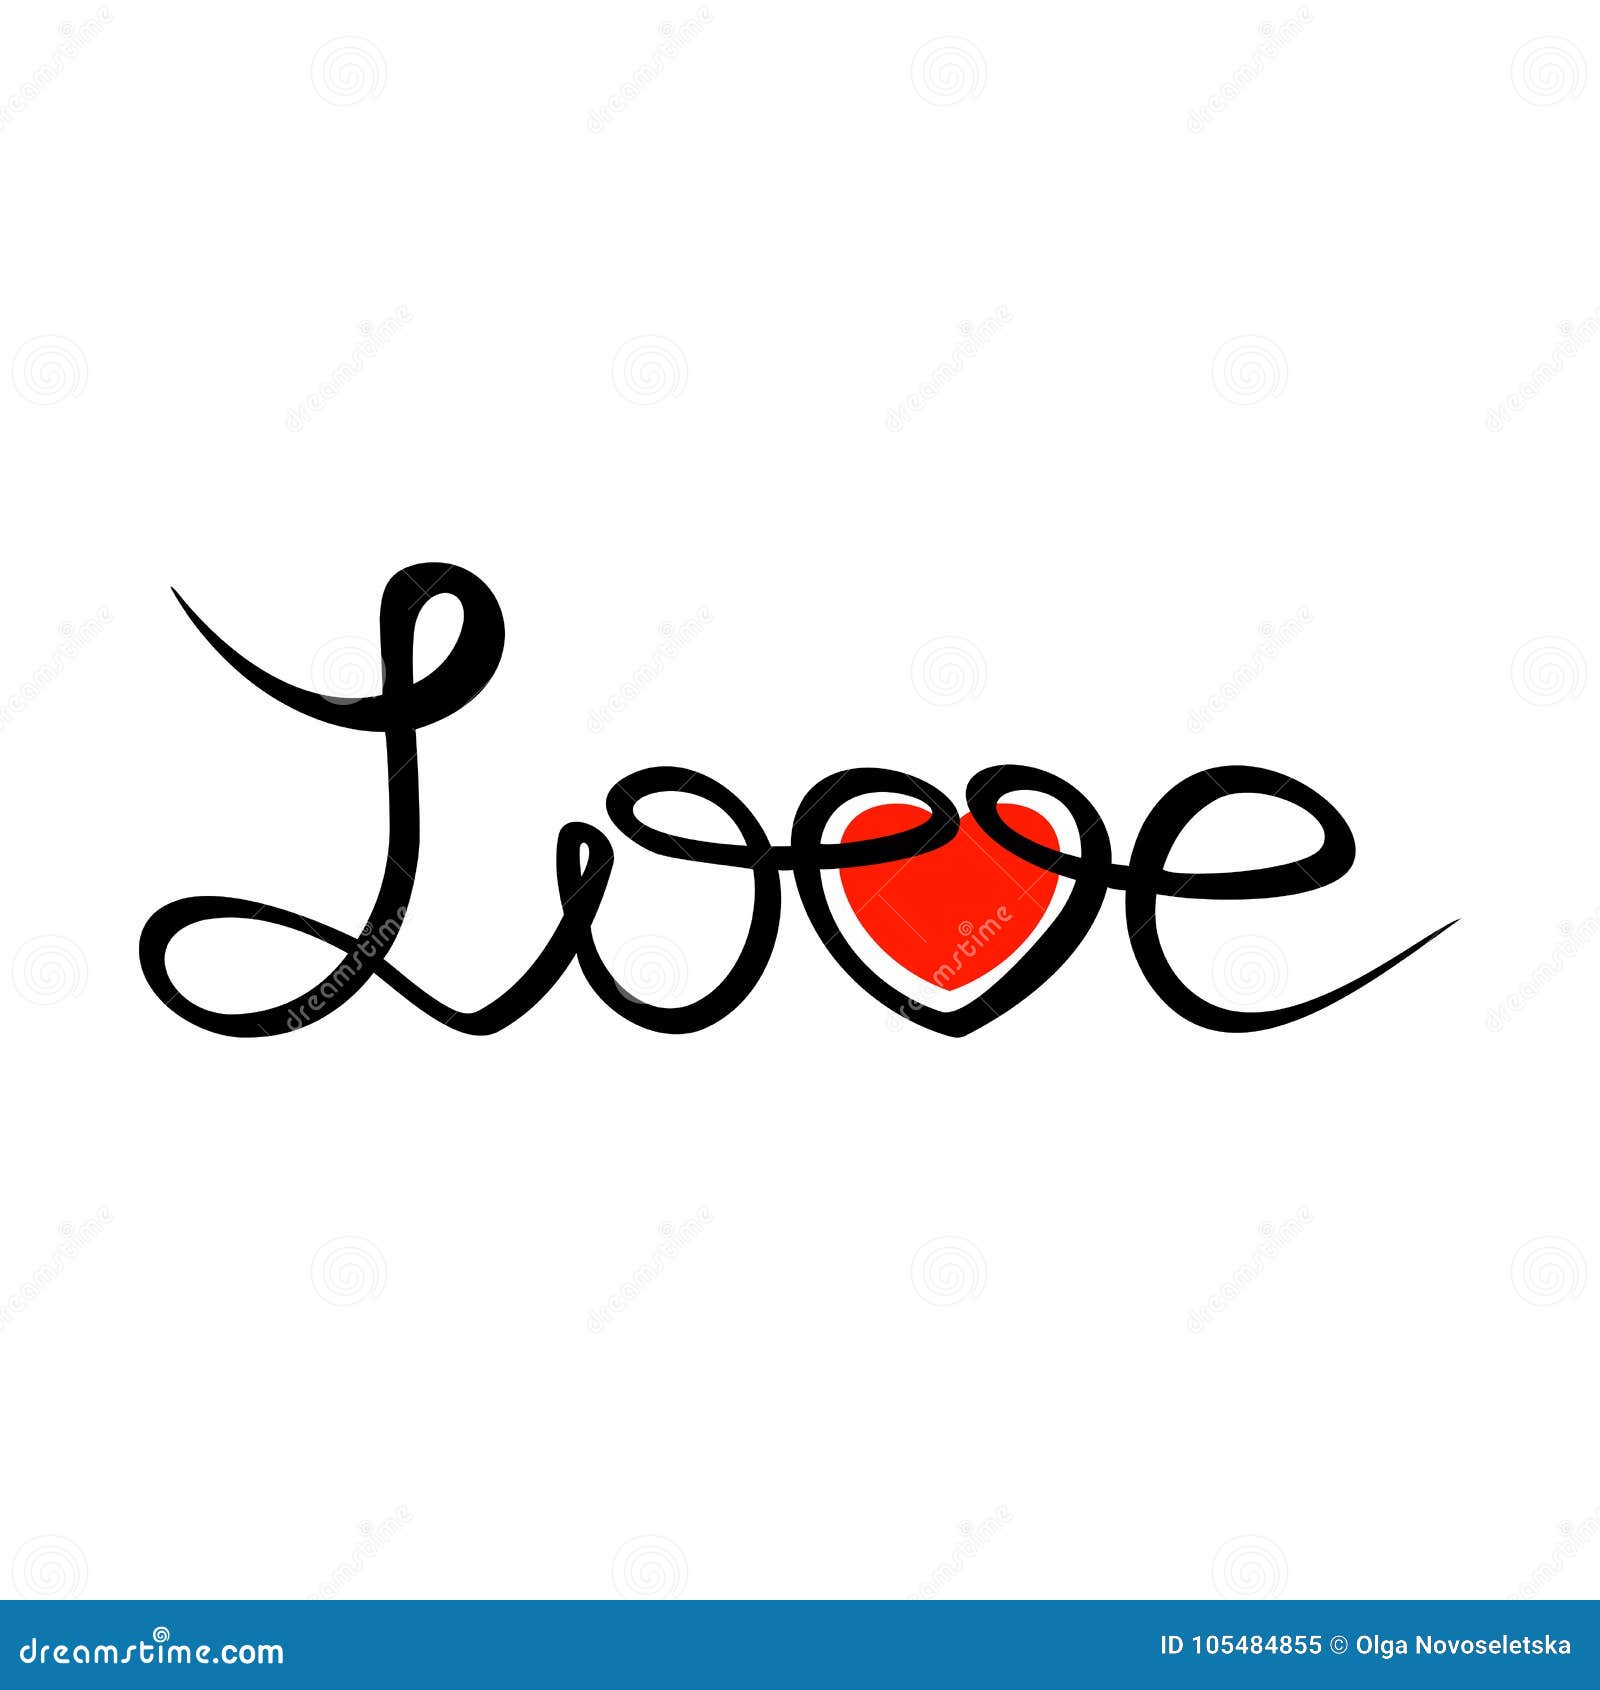 Love handdraw text stock vector. Illustration of heart - 105484855